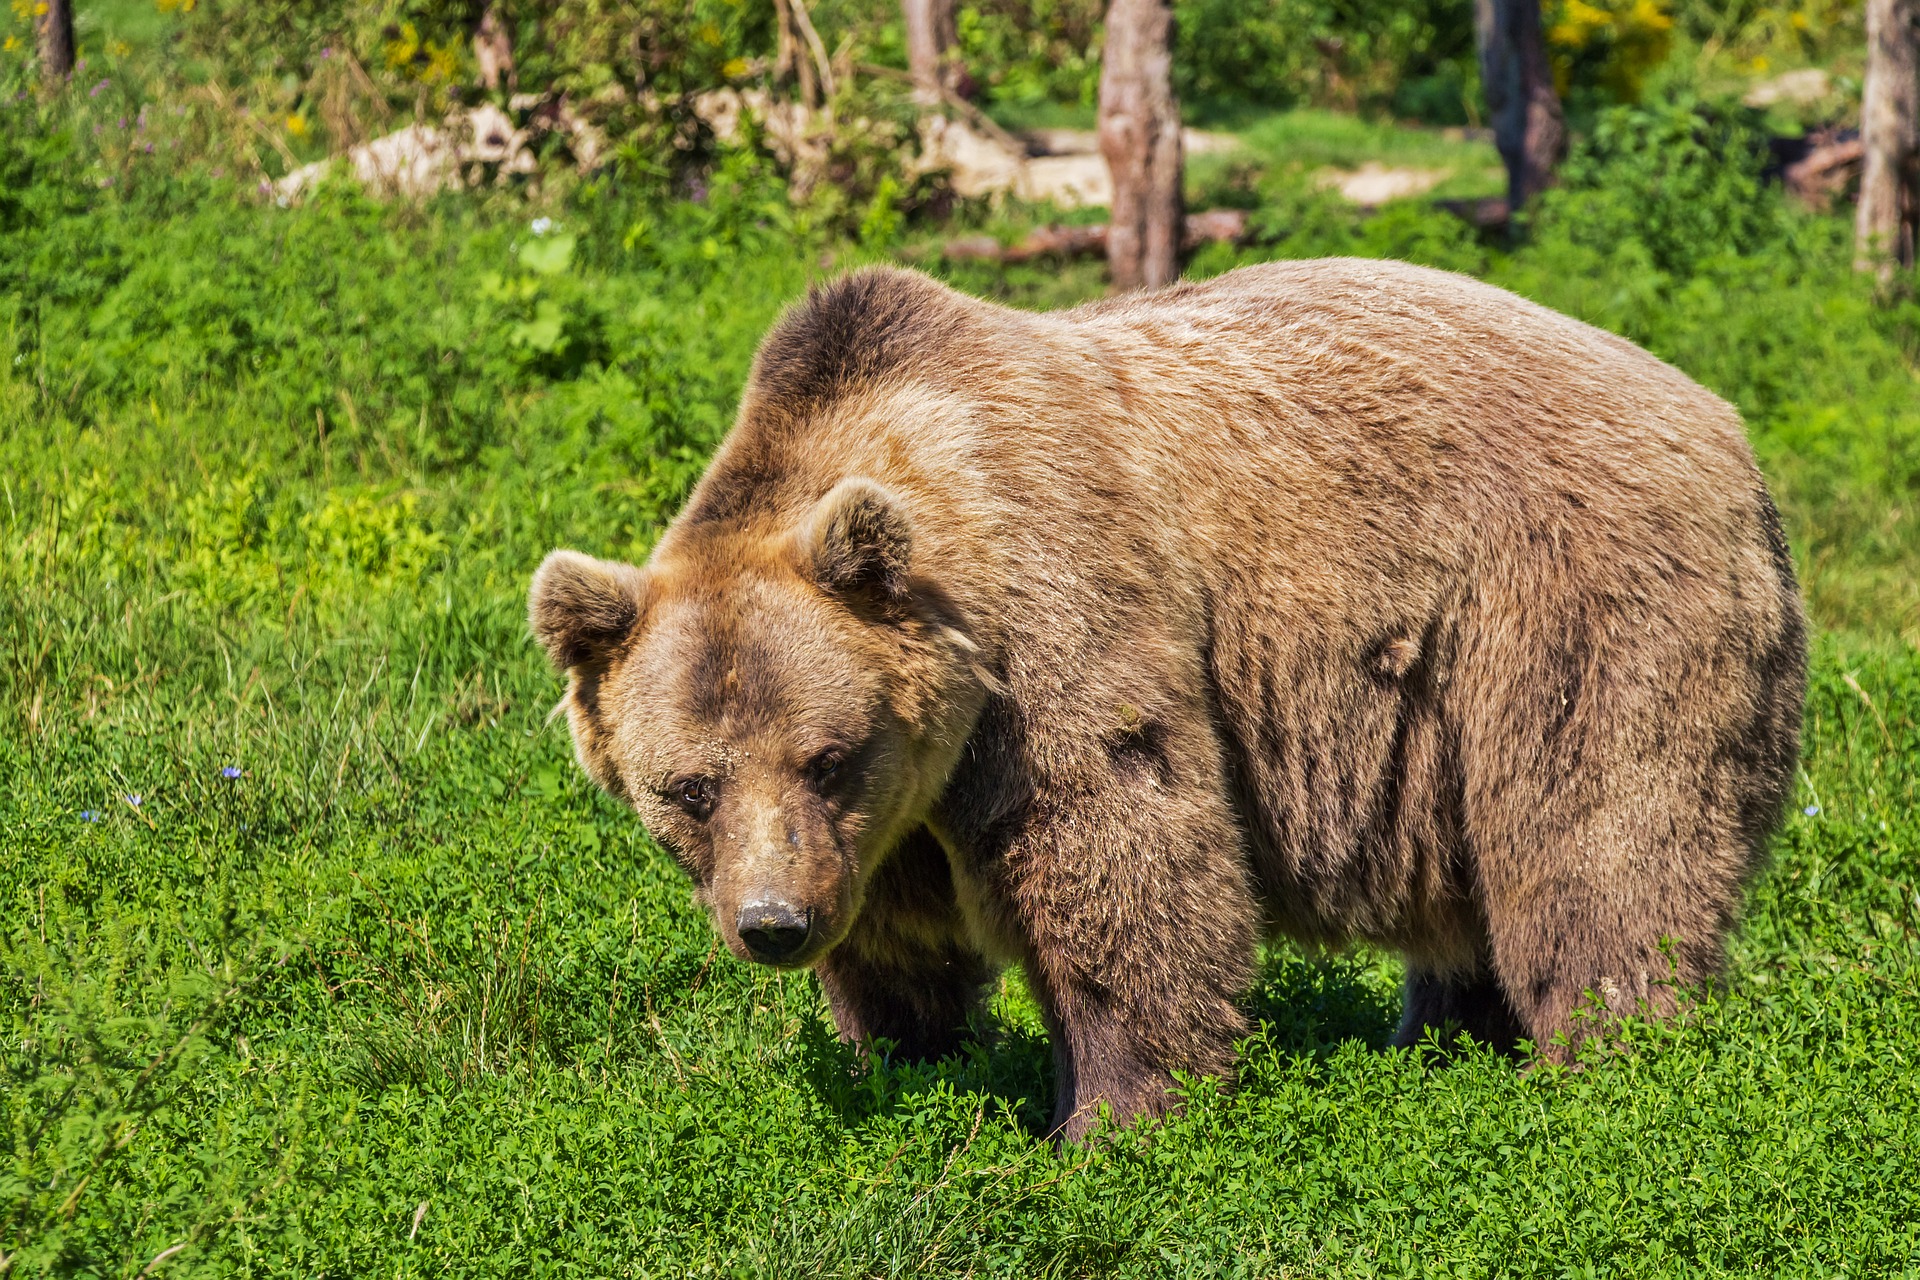 Cota de prevenție și intervenție la ursul brun este de 140 de exemplare pe an